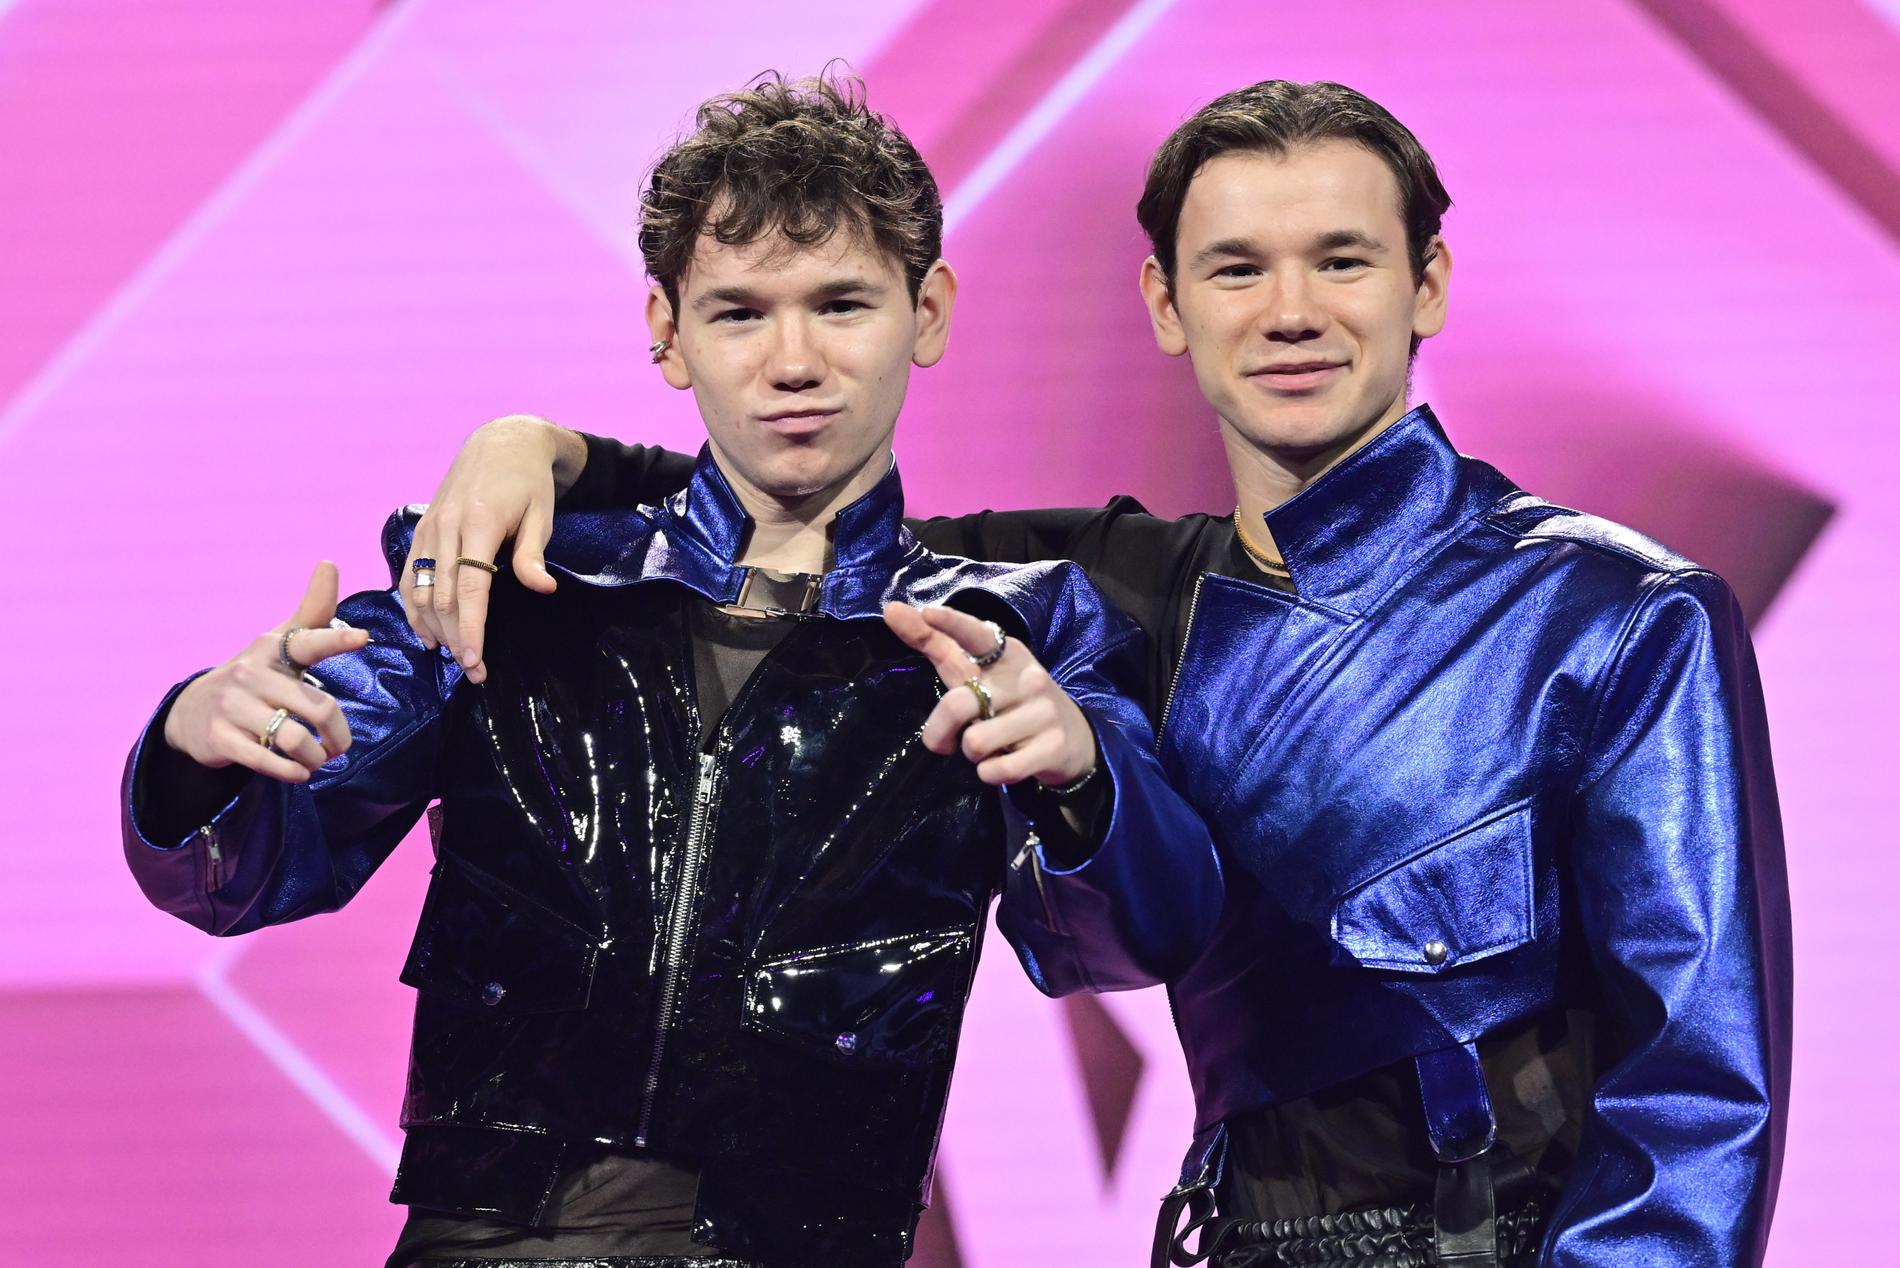 Marcus och Martinus Gunnarsen är favorittippade i Melodifestivalen.